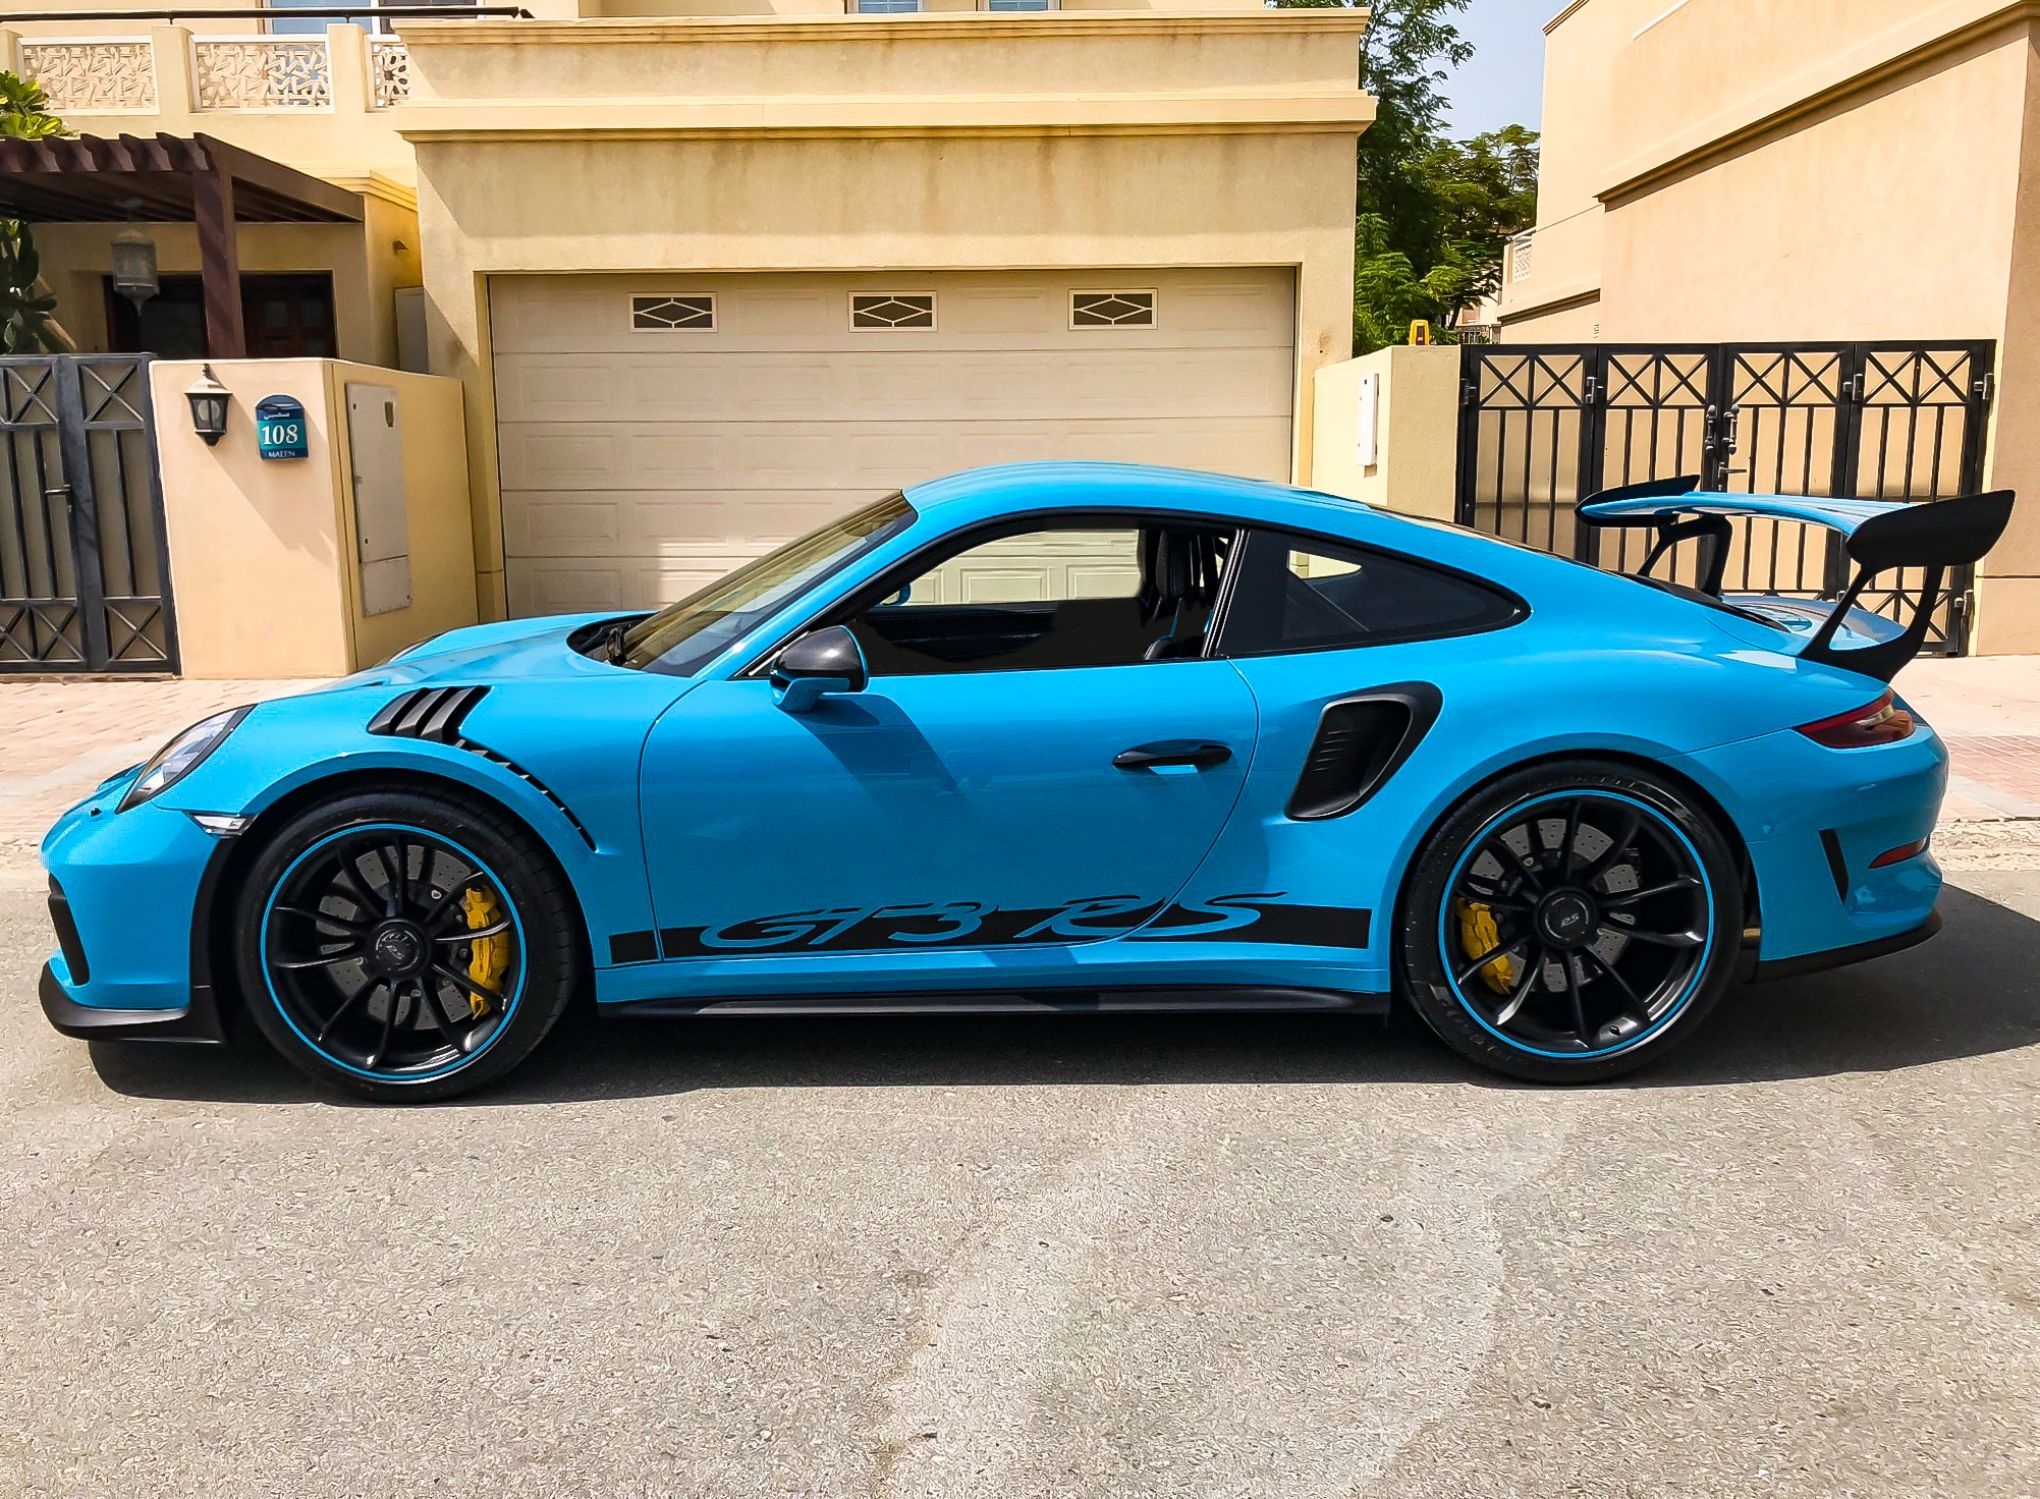 784Mile 2019 Porsche 991.2 GT3 RS Miami Blue PCARMARKET